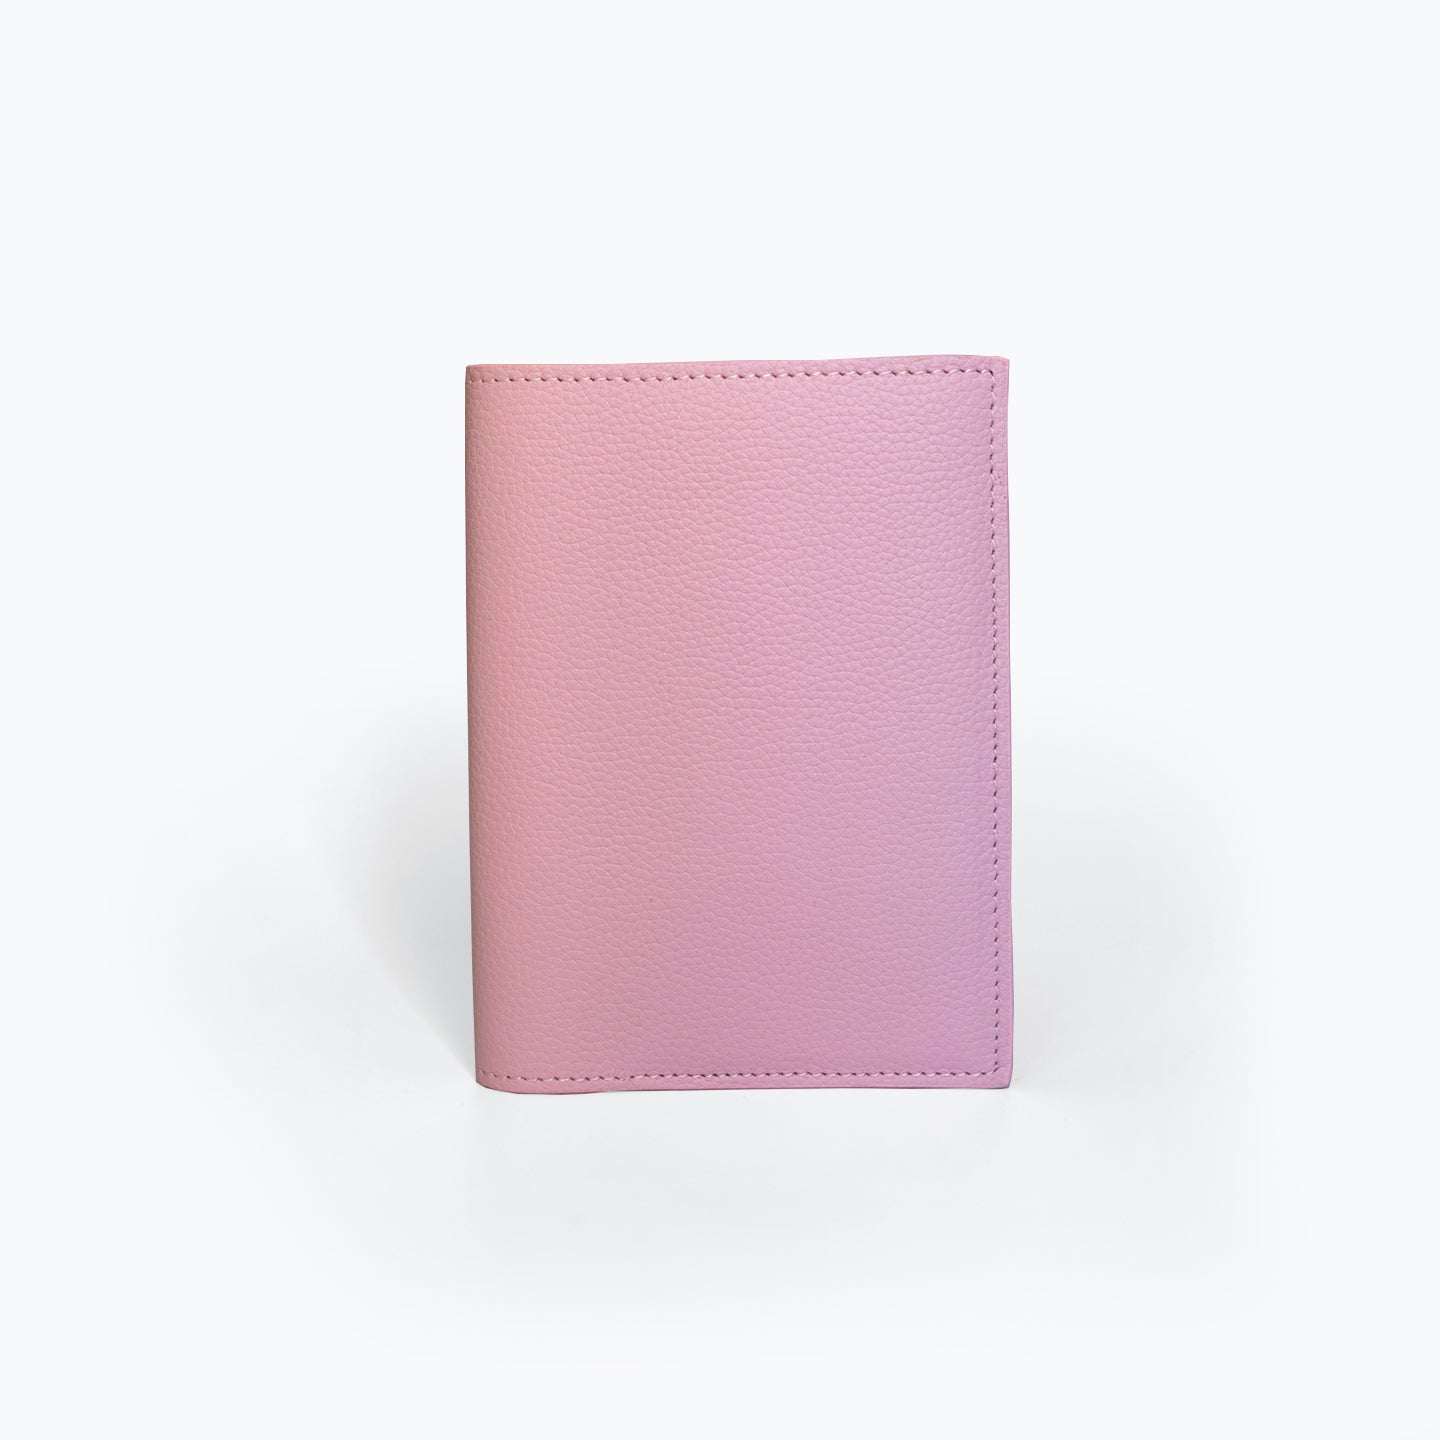 淡粉色护照套